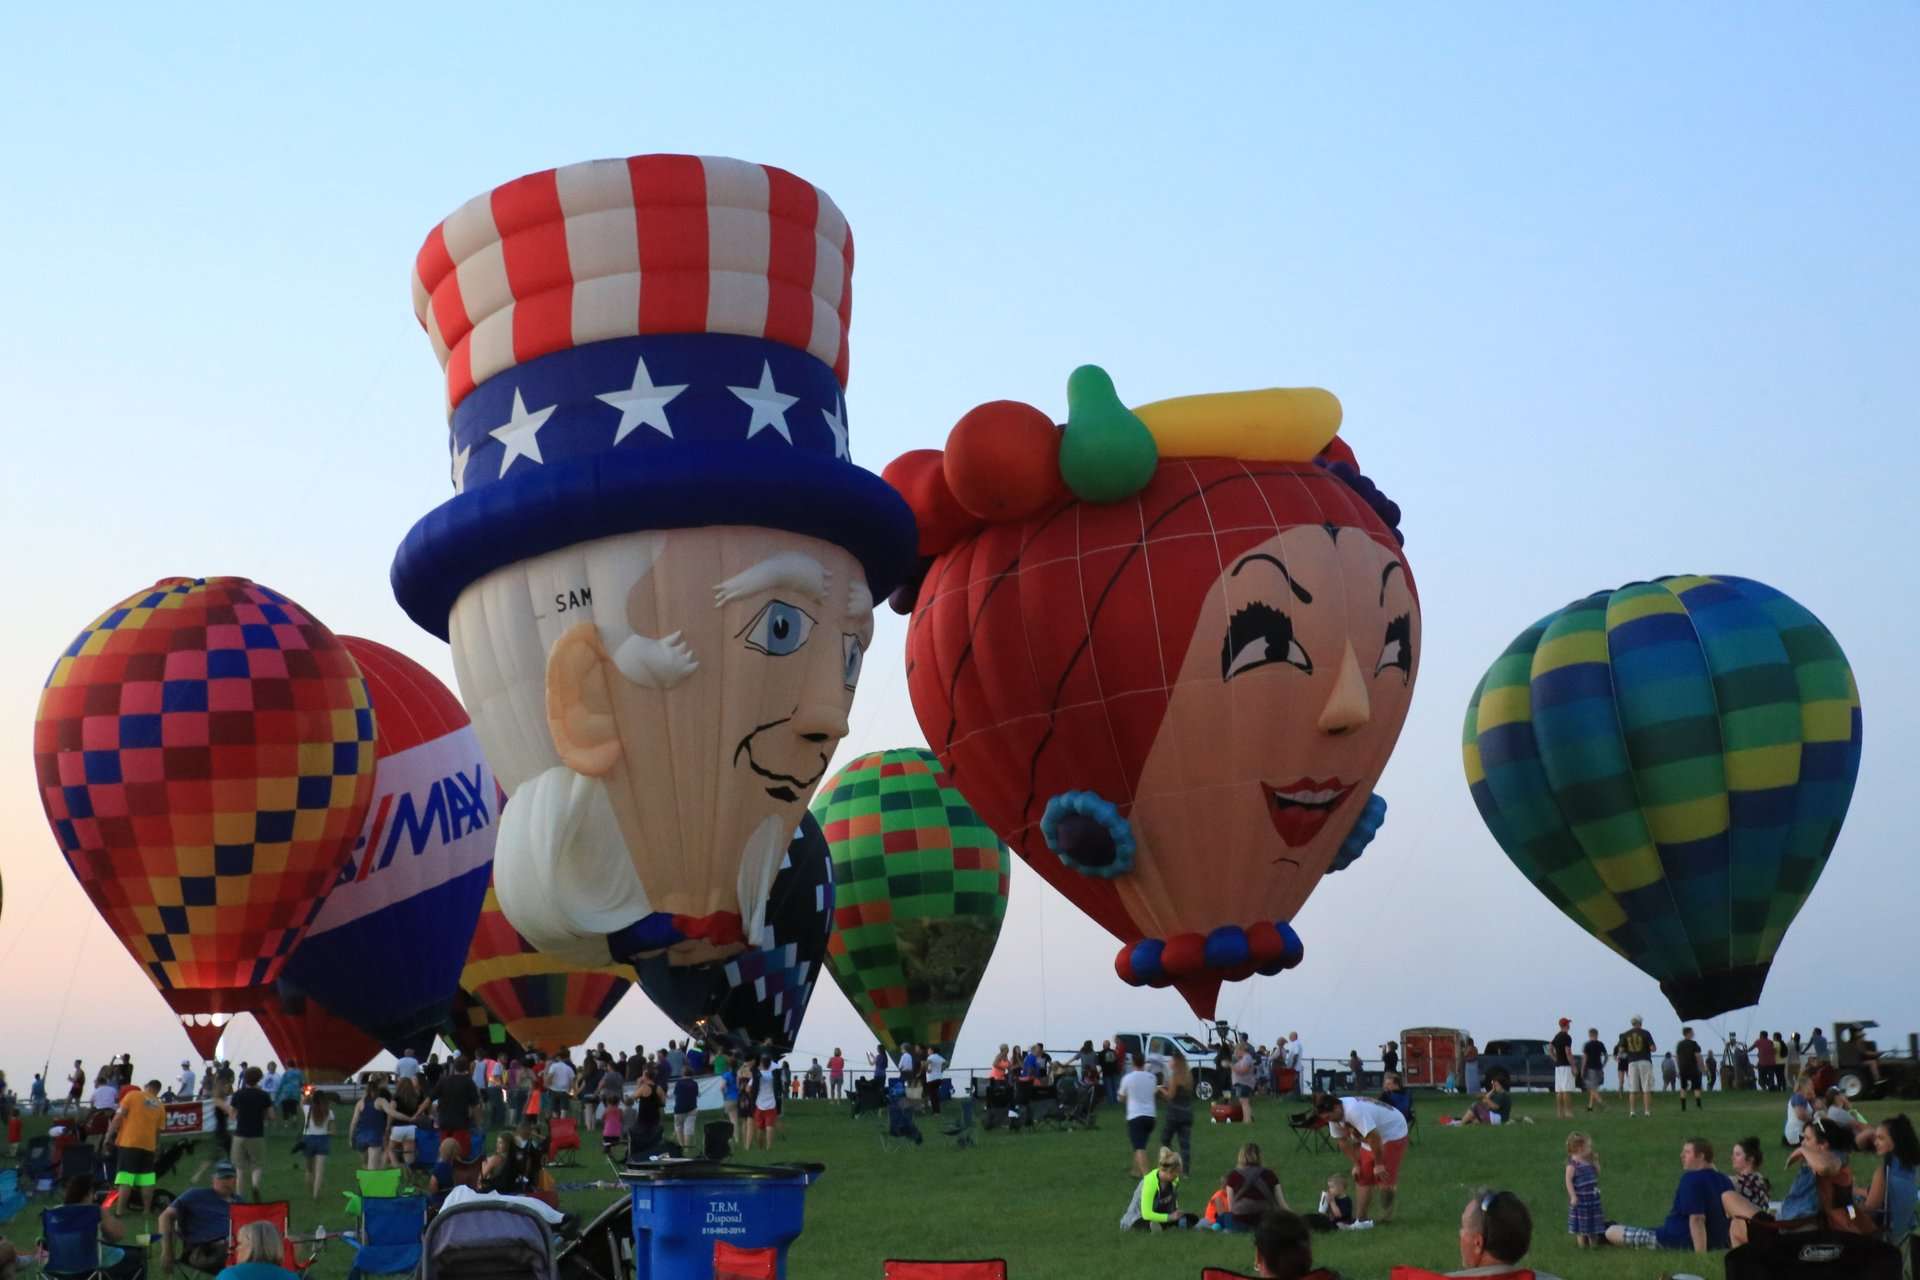 Balloon Festival Houston